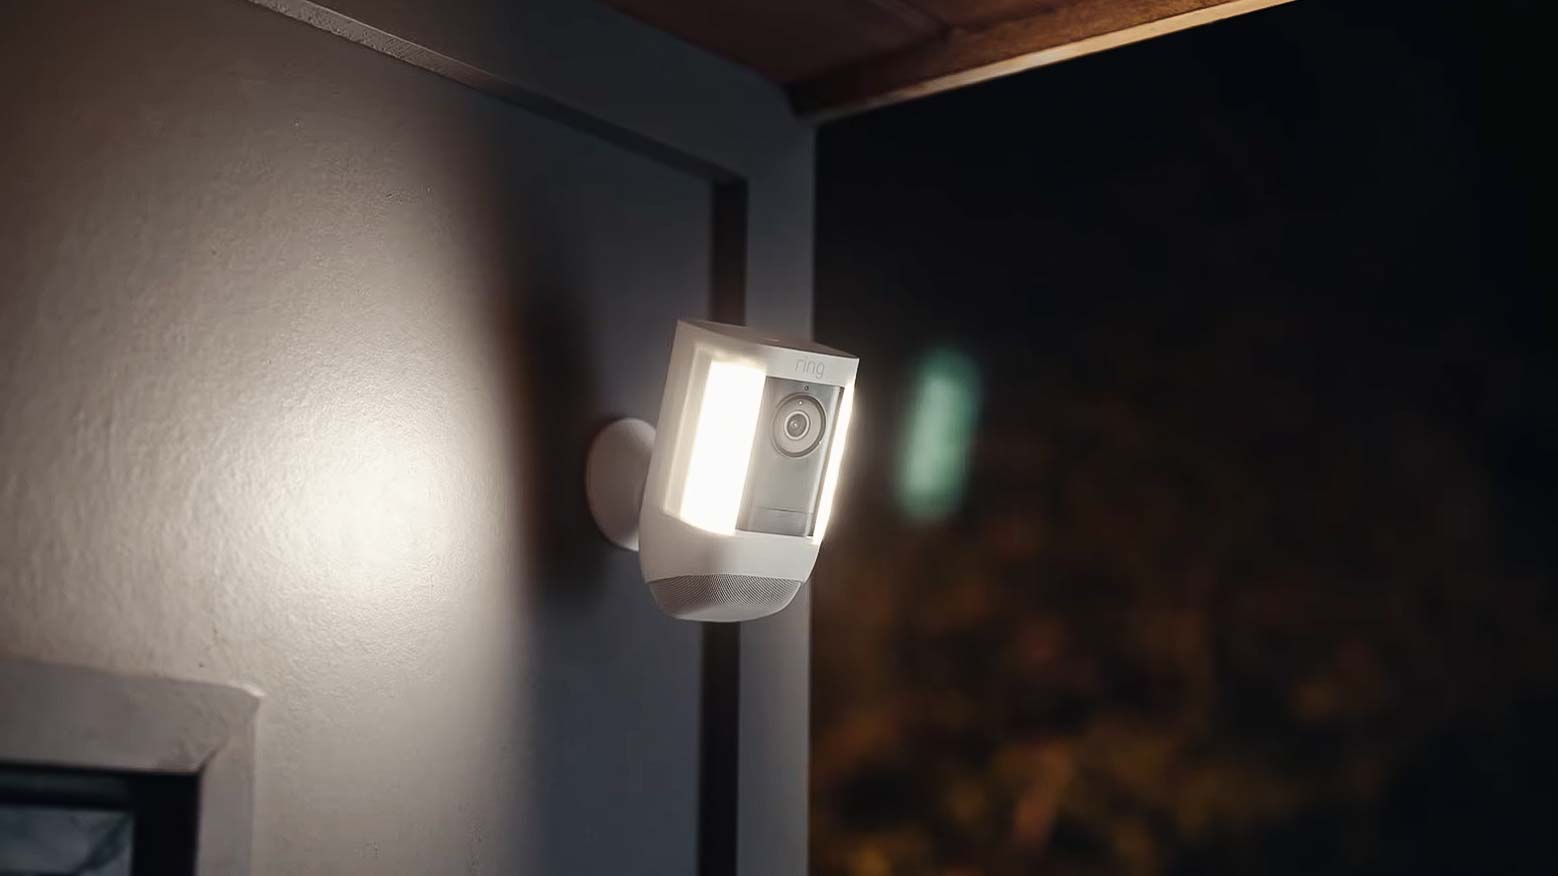 Ring Spotlight Cam Pro Outdoor 1080p Plug-In Surveillance Camera